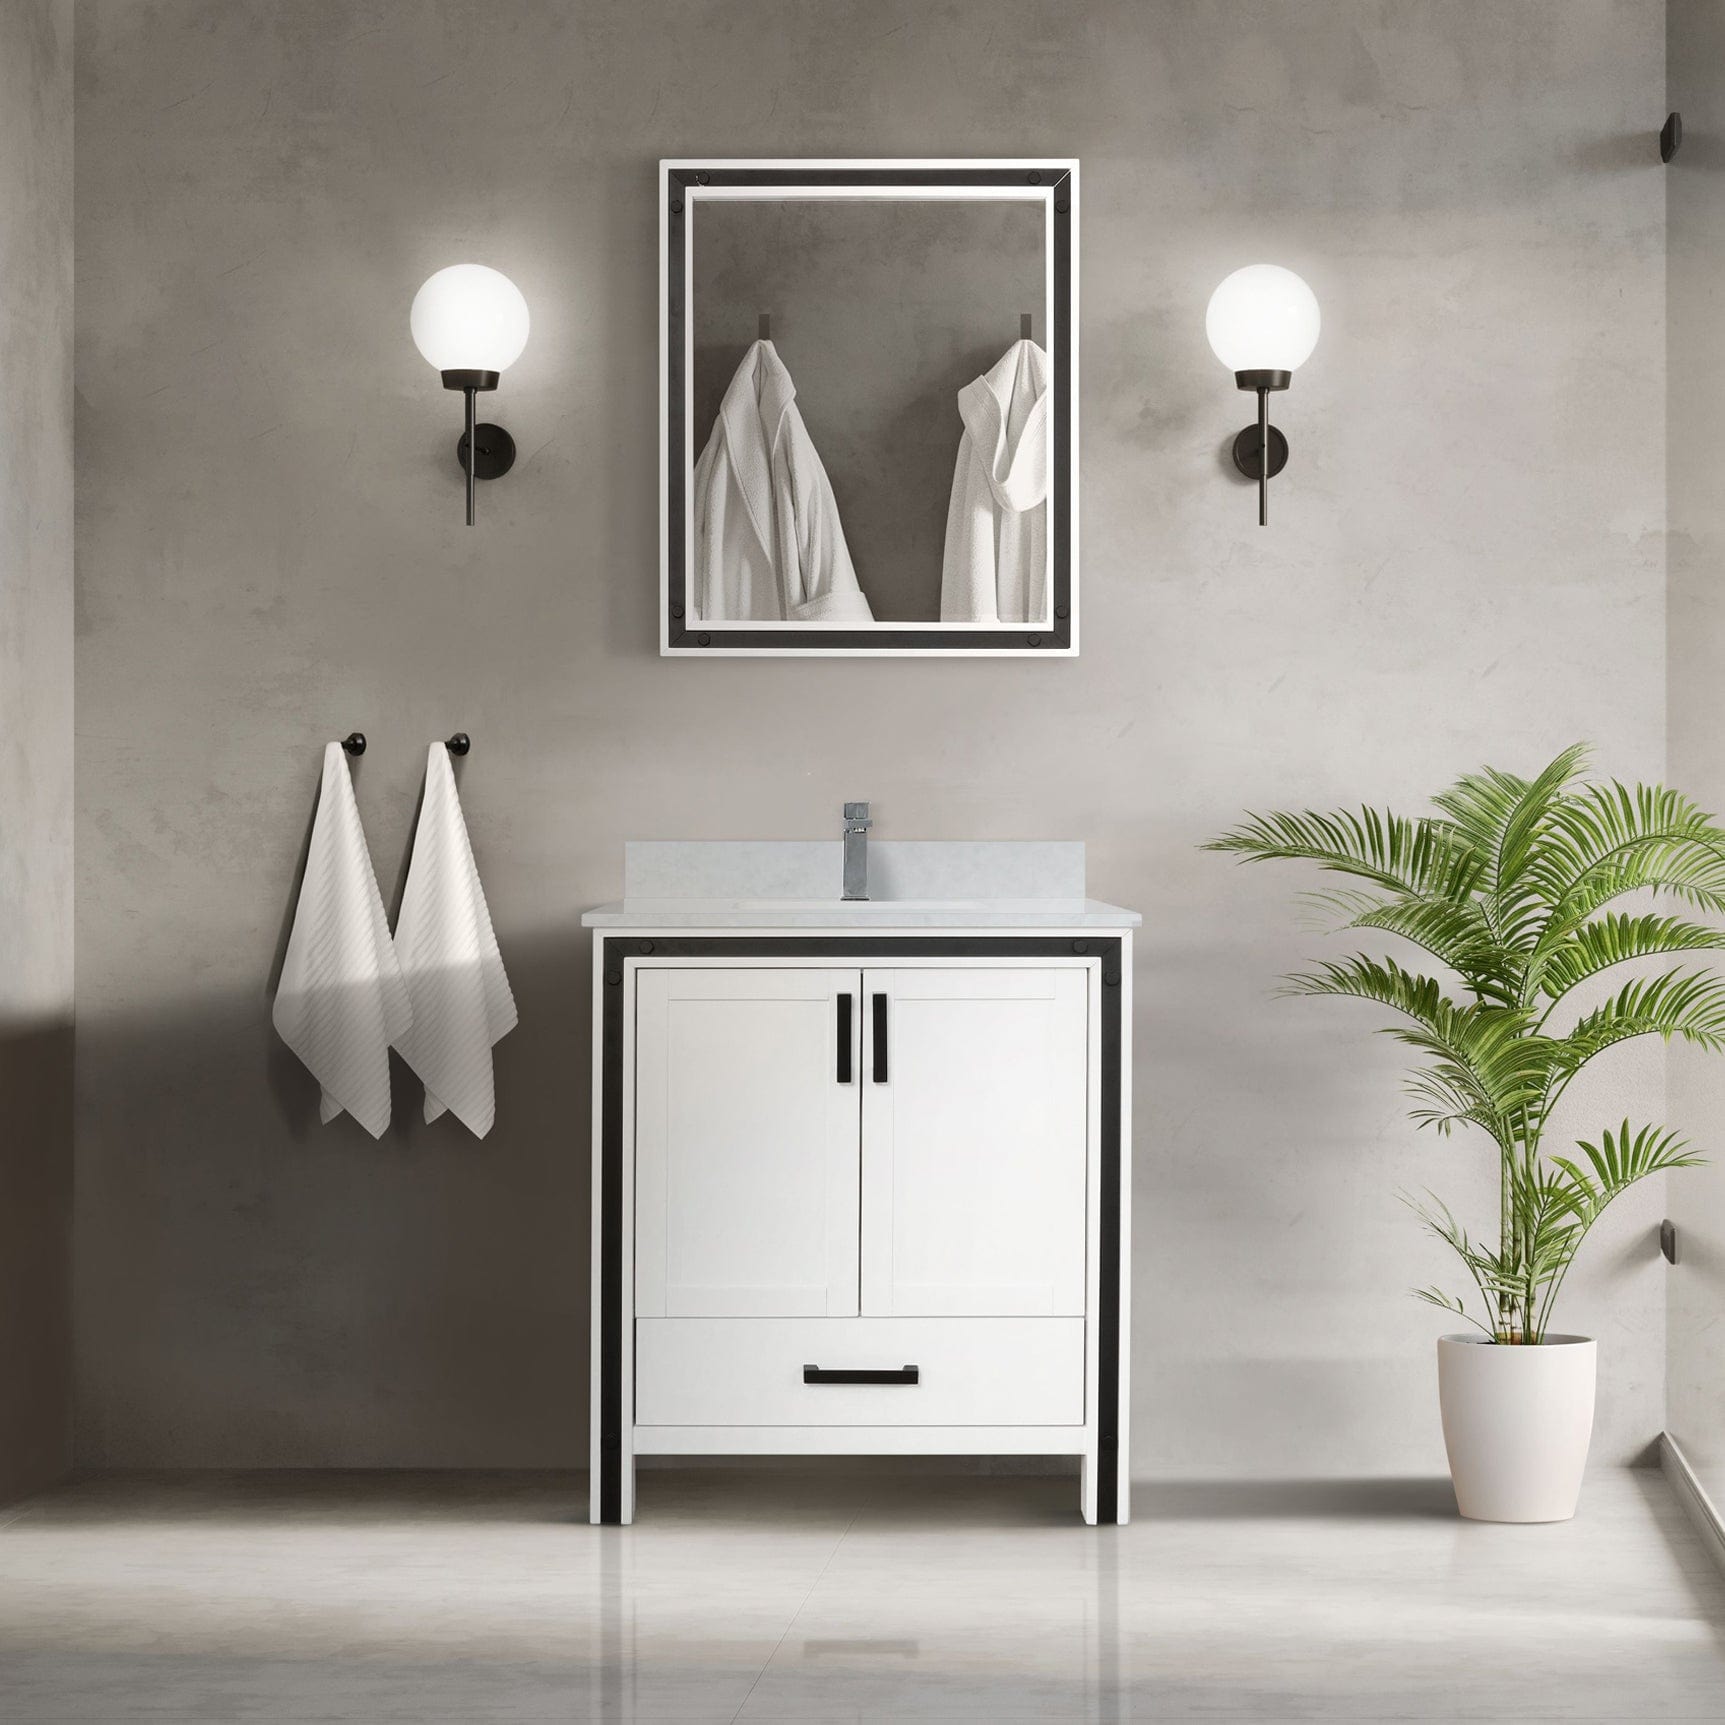 Bell + Modern Bathroom Vanity 30